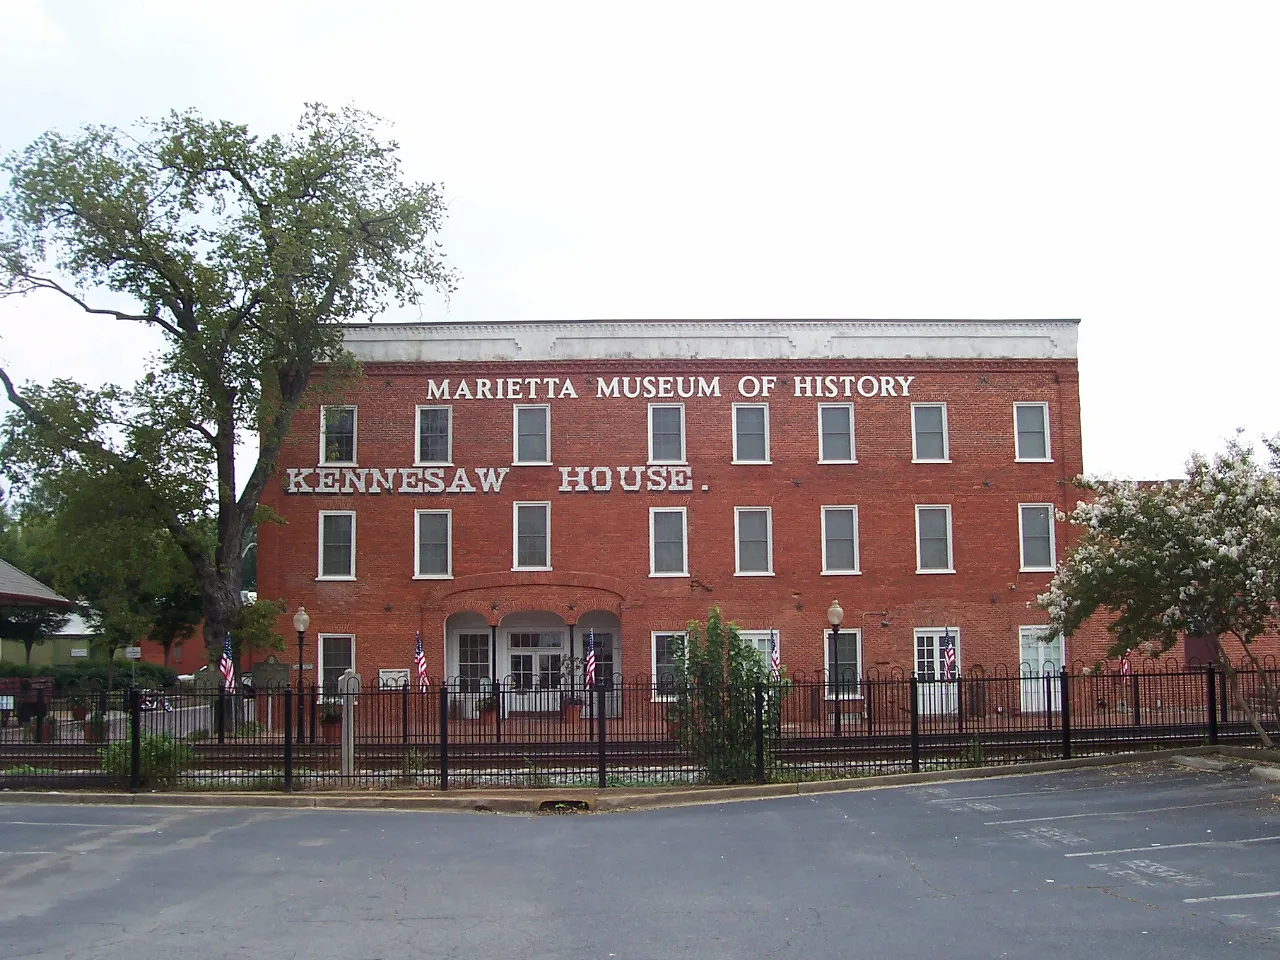 Marietta Museum of History, Marietta GA